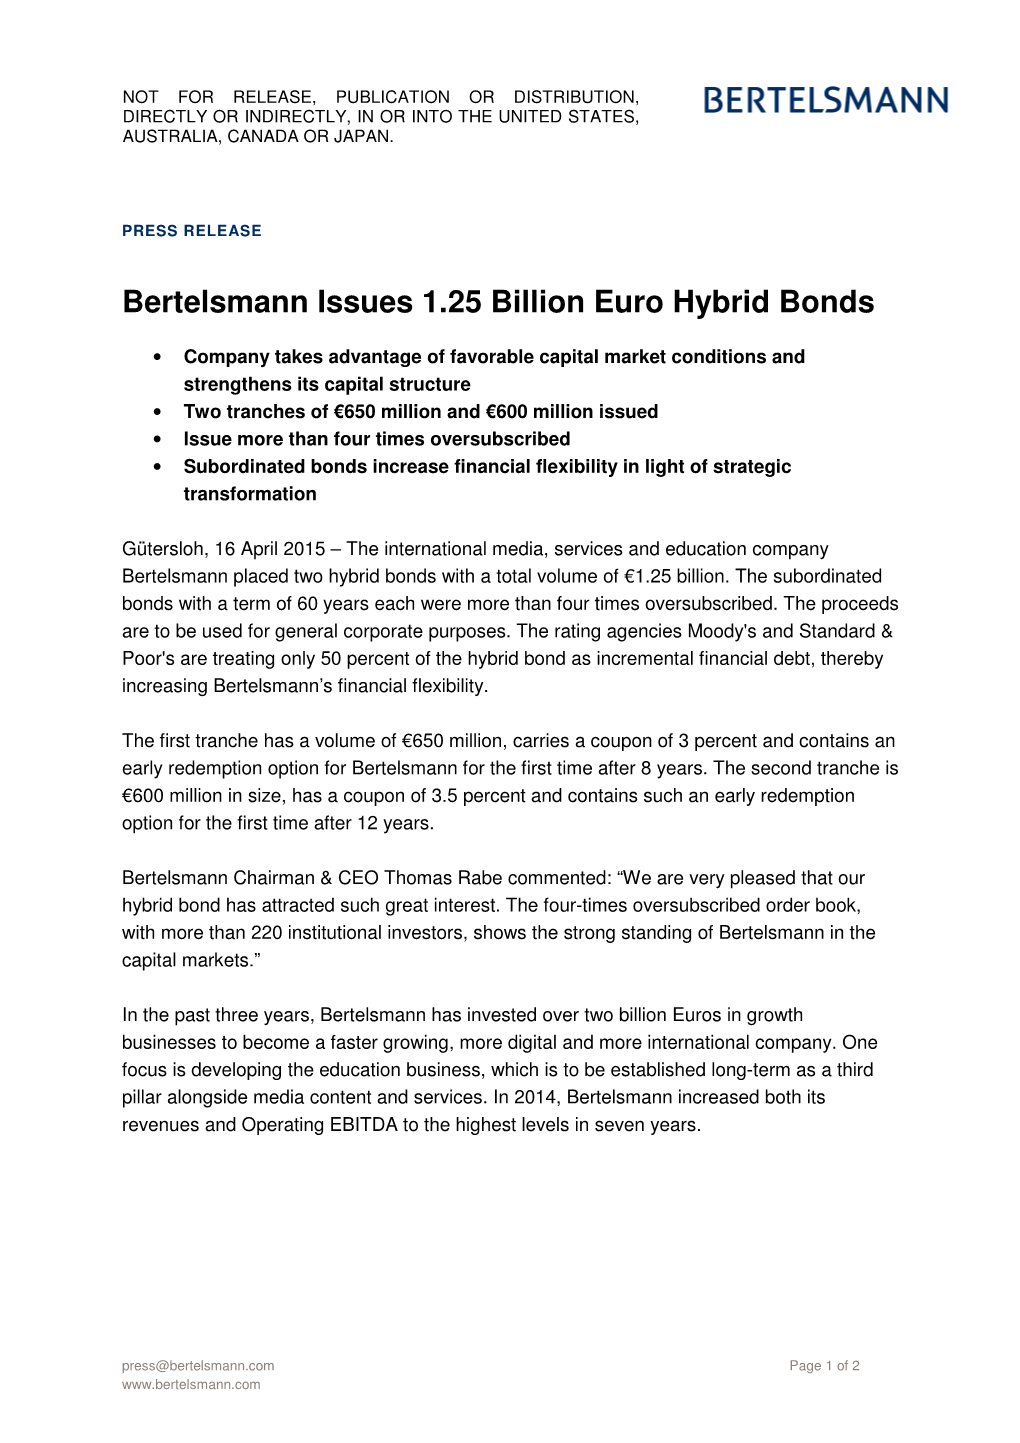 Bertelsmann Issues 1.25 Billion Euro Hybrid Bonds